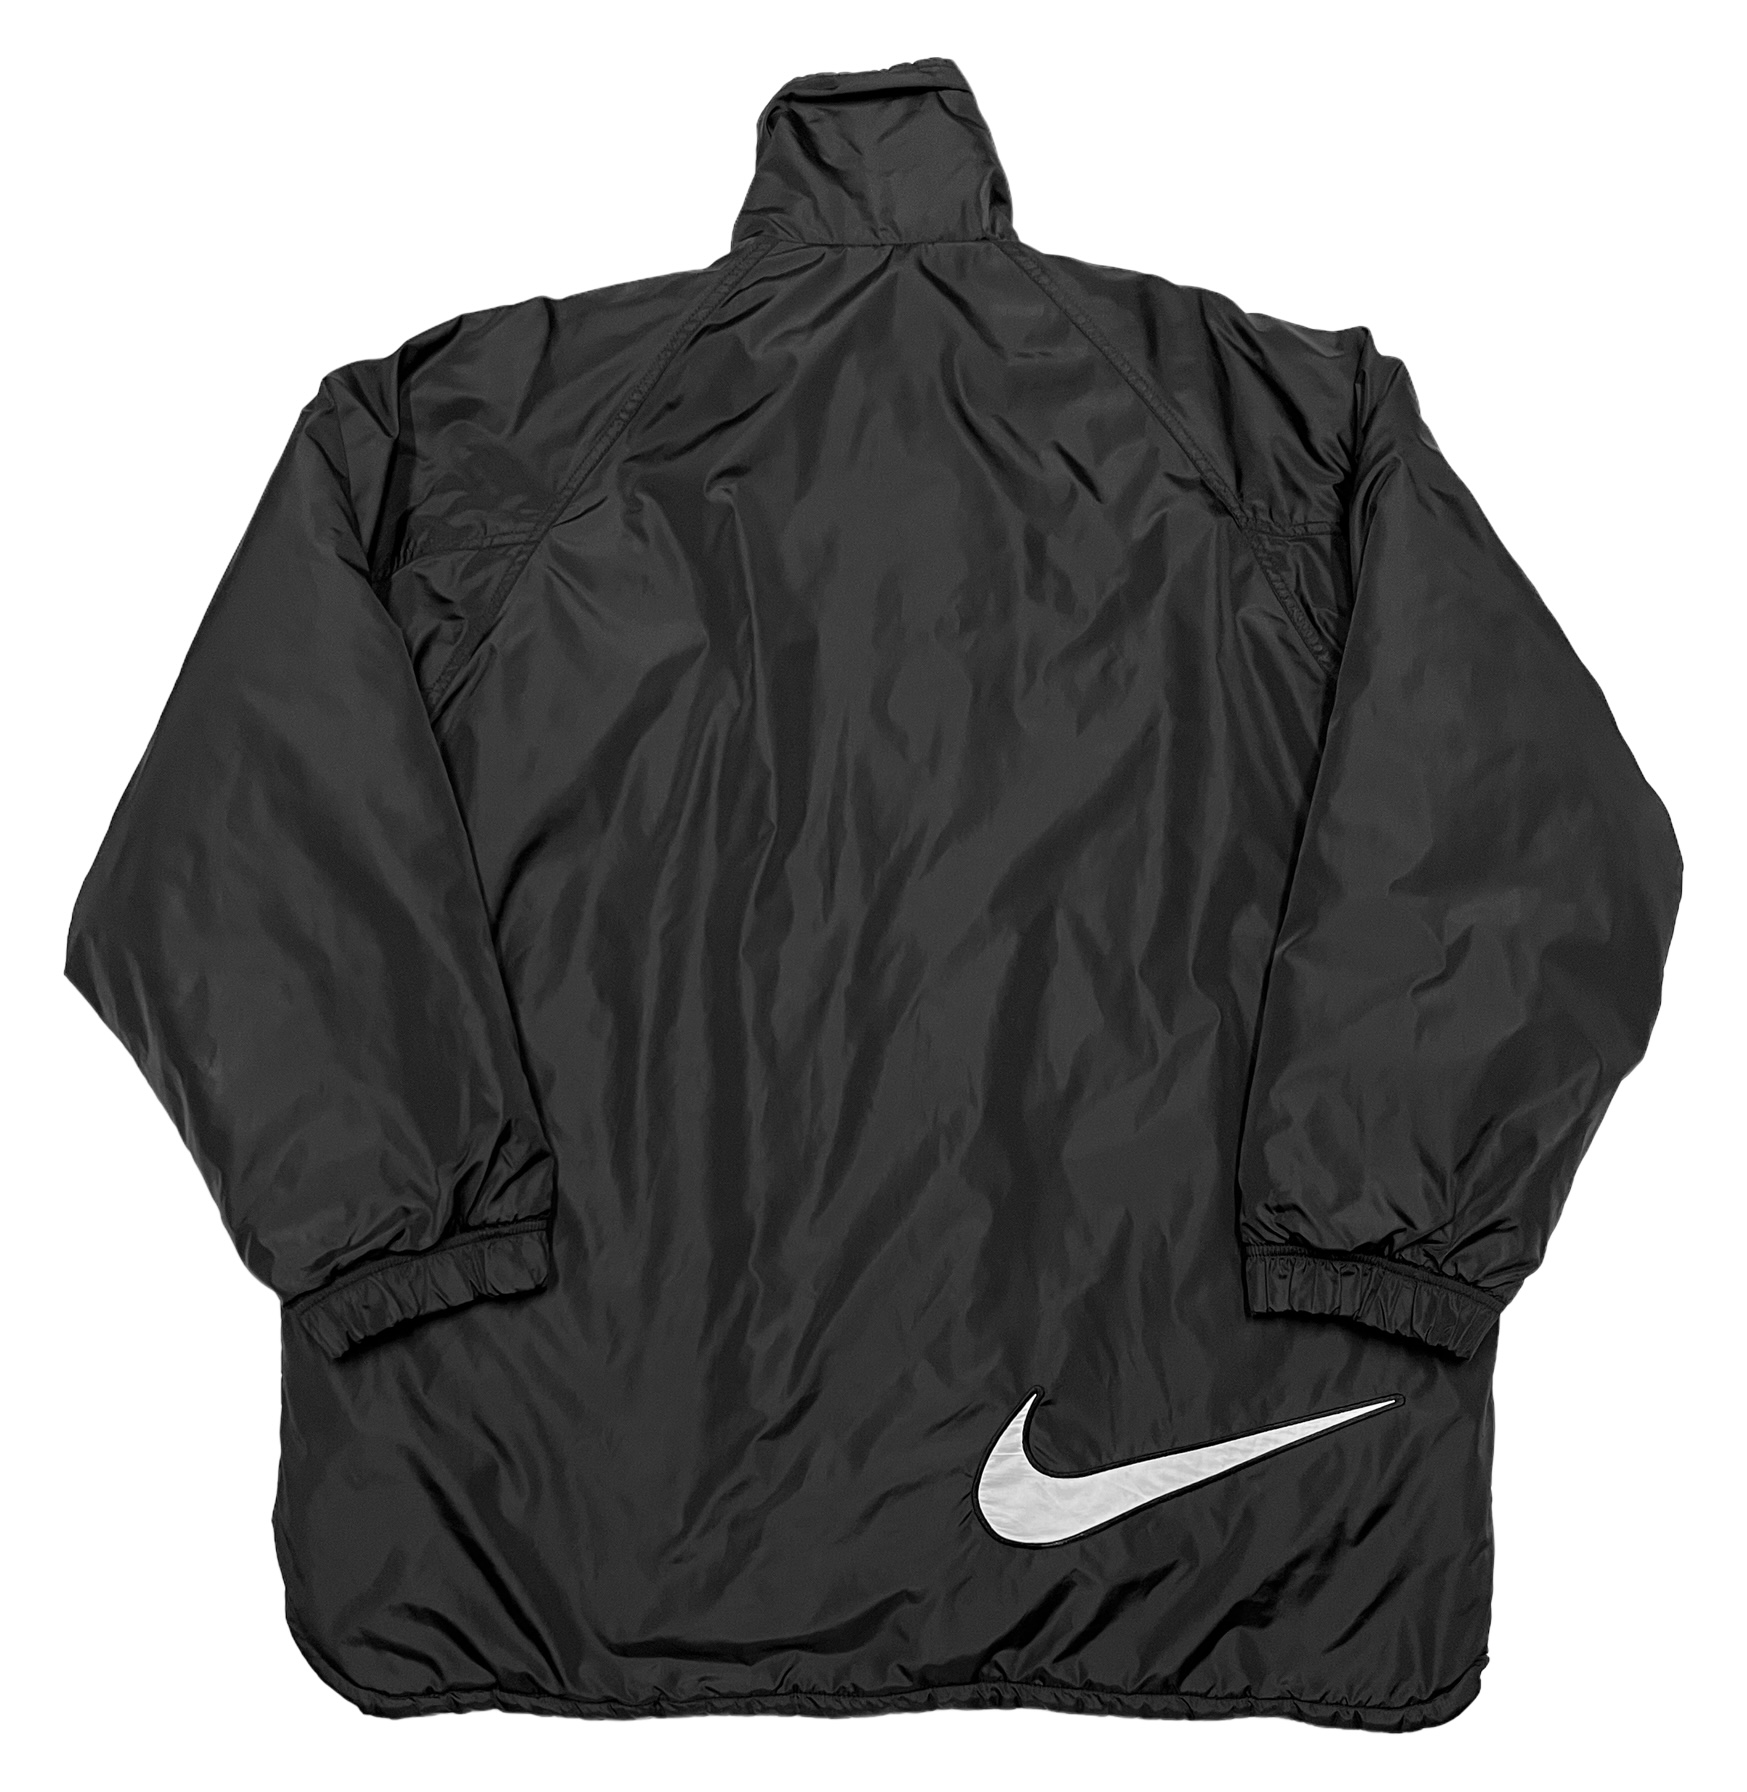 Nike winter jacket Lowkey Archives